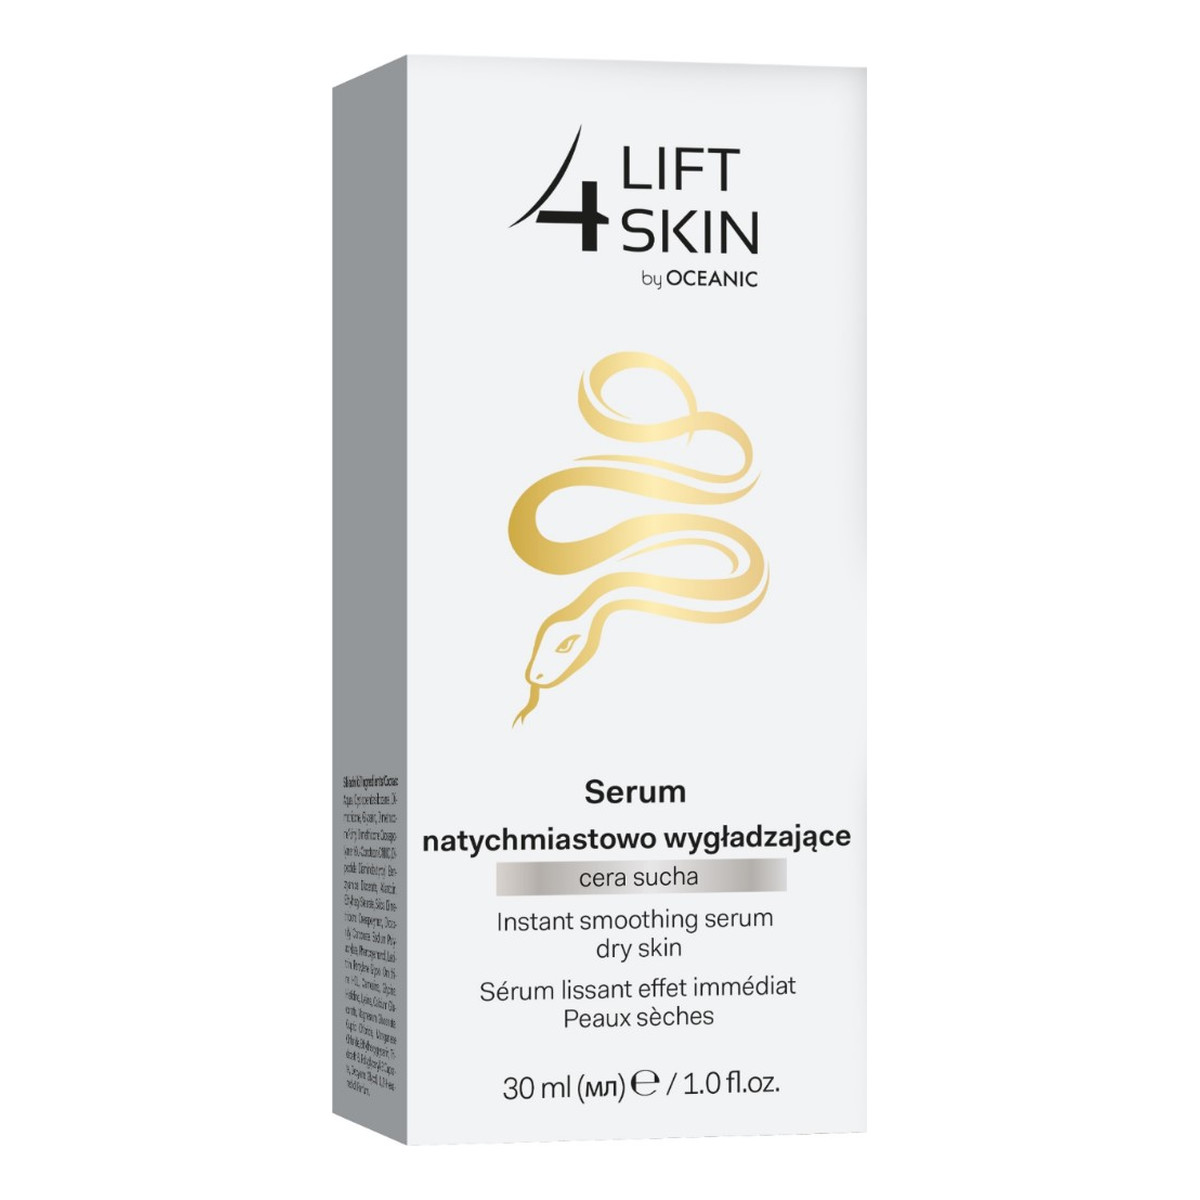 Lift 4 Skin Serum natychmiastowo wygładzające do cery suchej 30ml